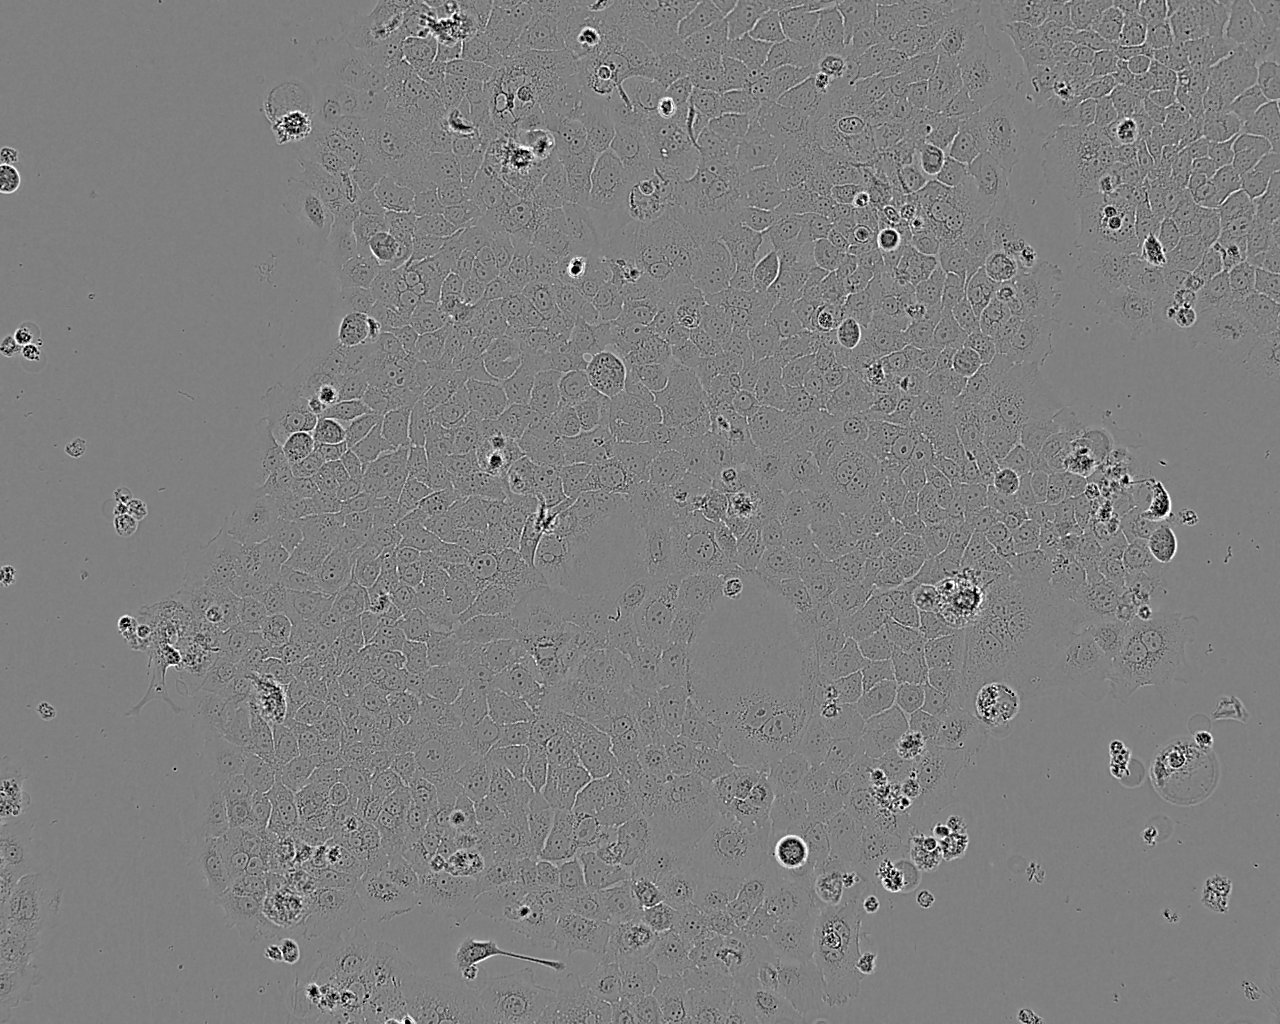 NCI-H1048 epithelioid cells人小细胞肺癌细胞系